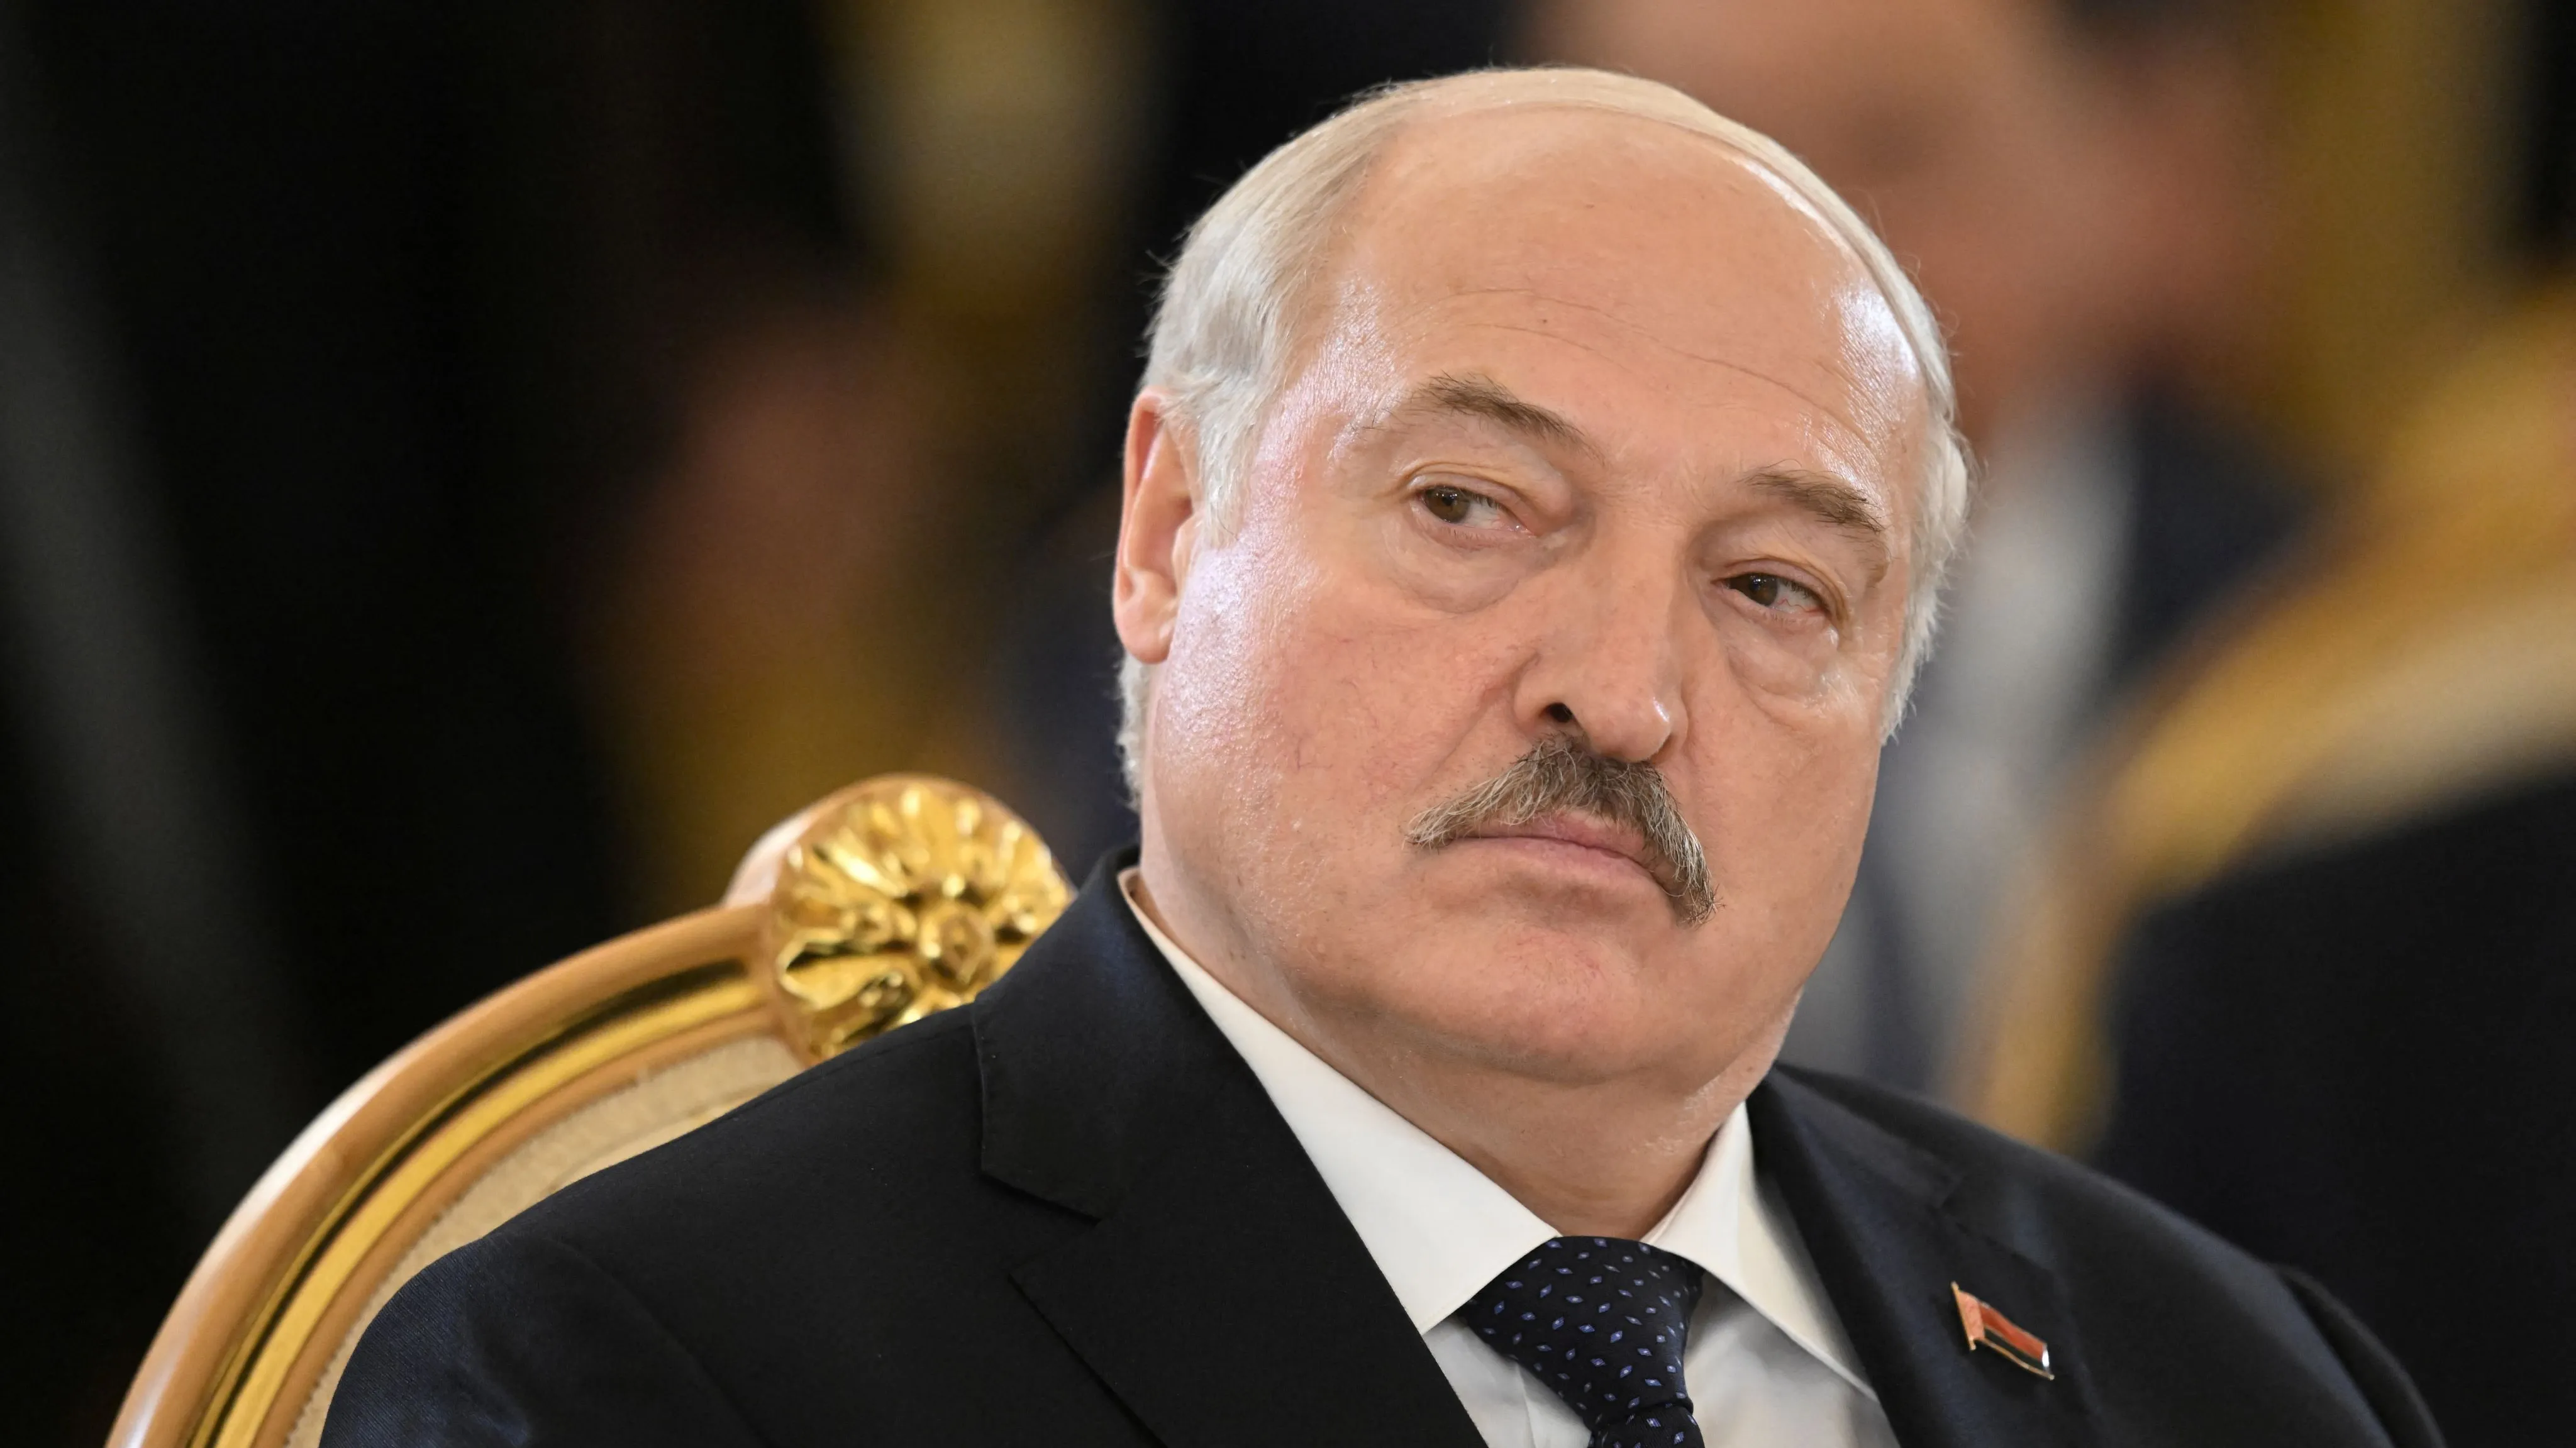 Lukašenko s generálem mluvil o koridoru mezi Běloruskem a Kaliningradem. Řešili, jak ho obsadit